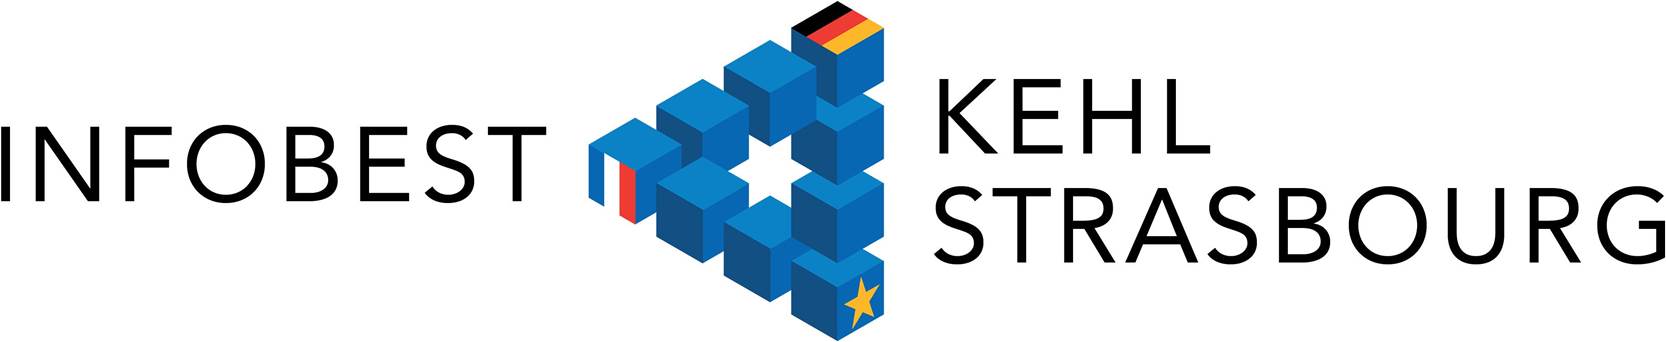 Logo von Infobest Kehl Strasbourg